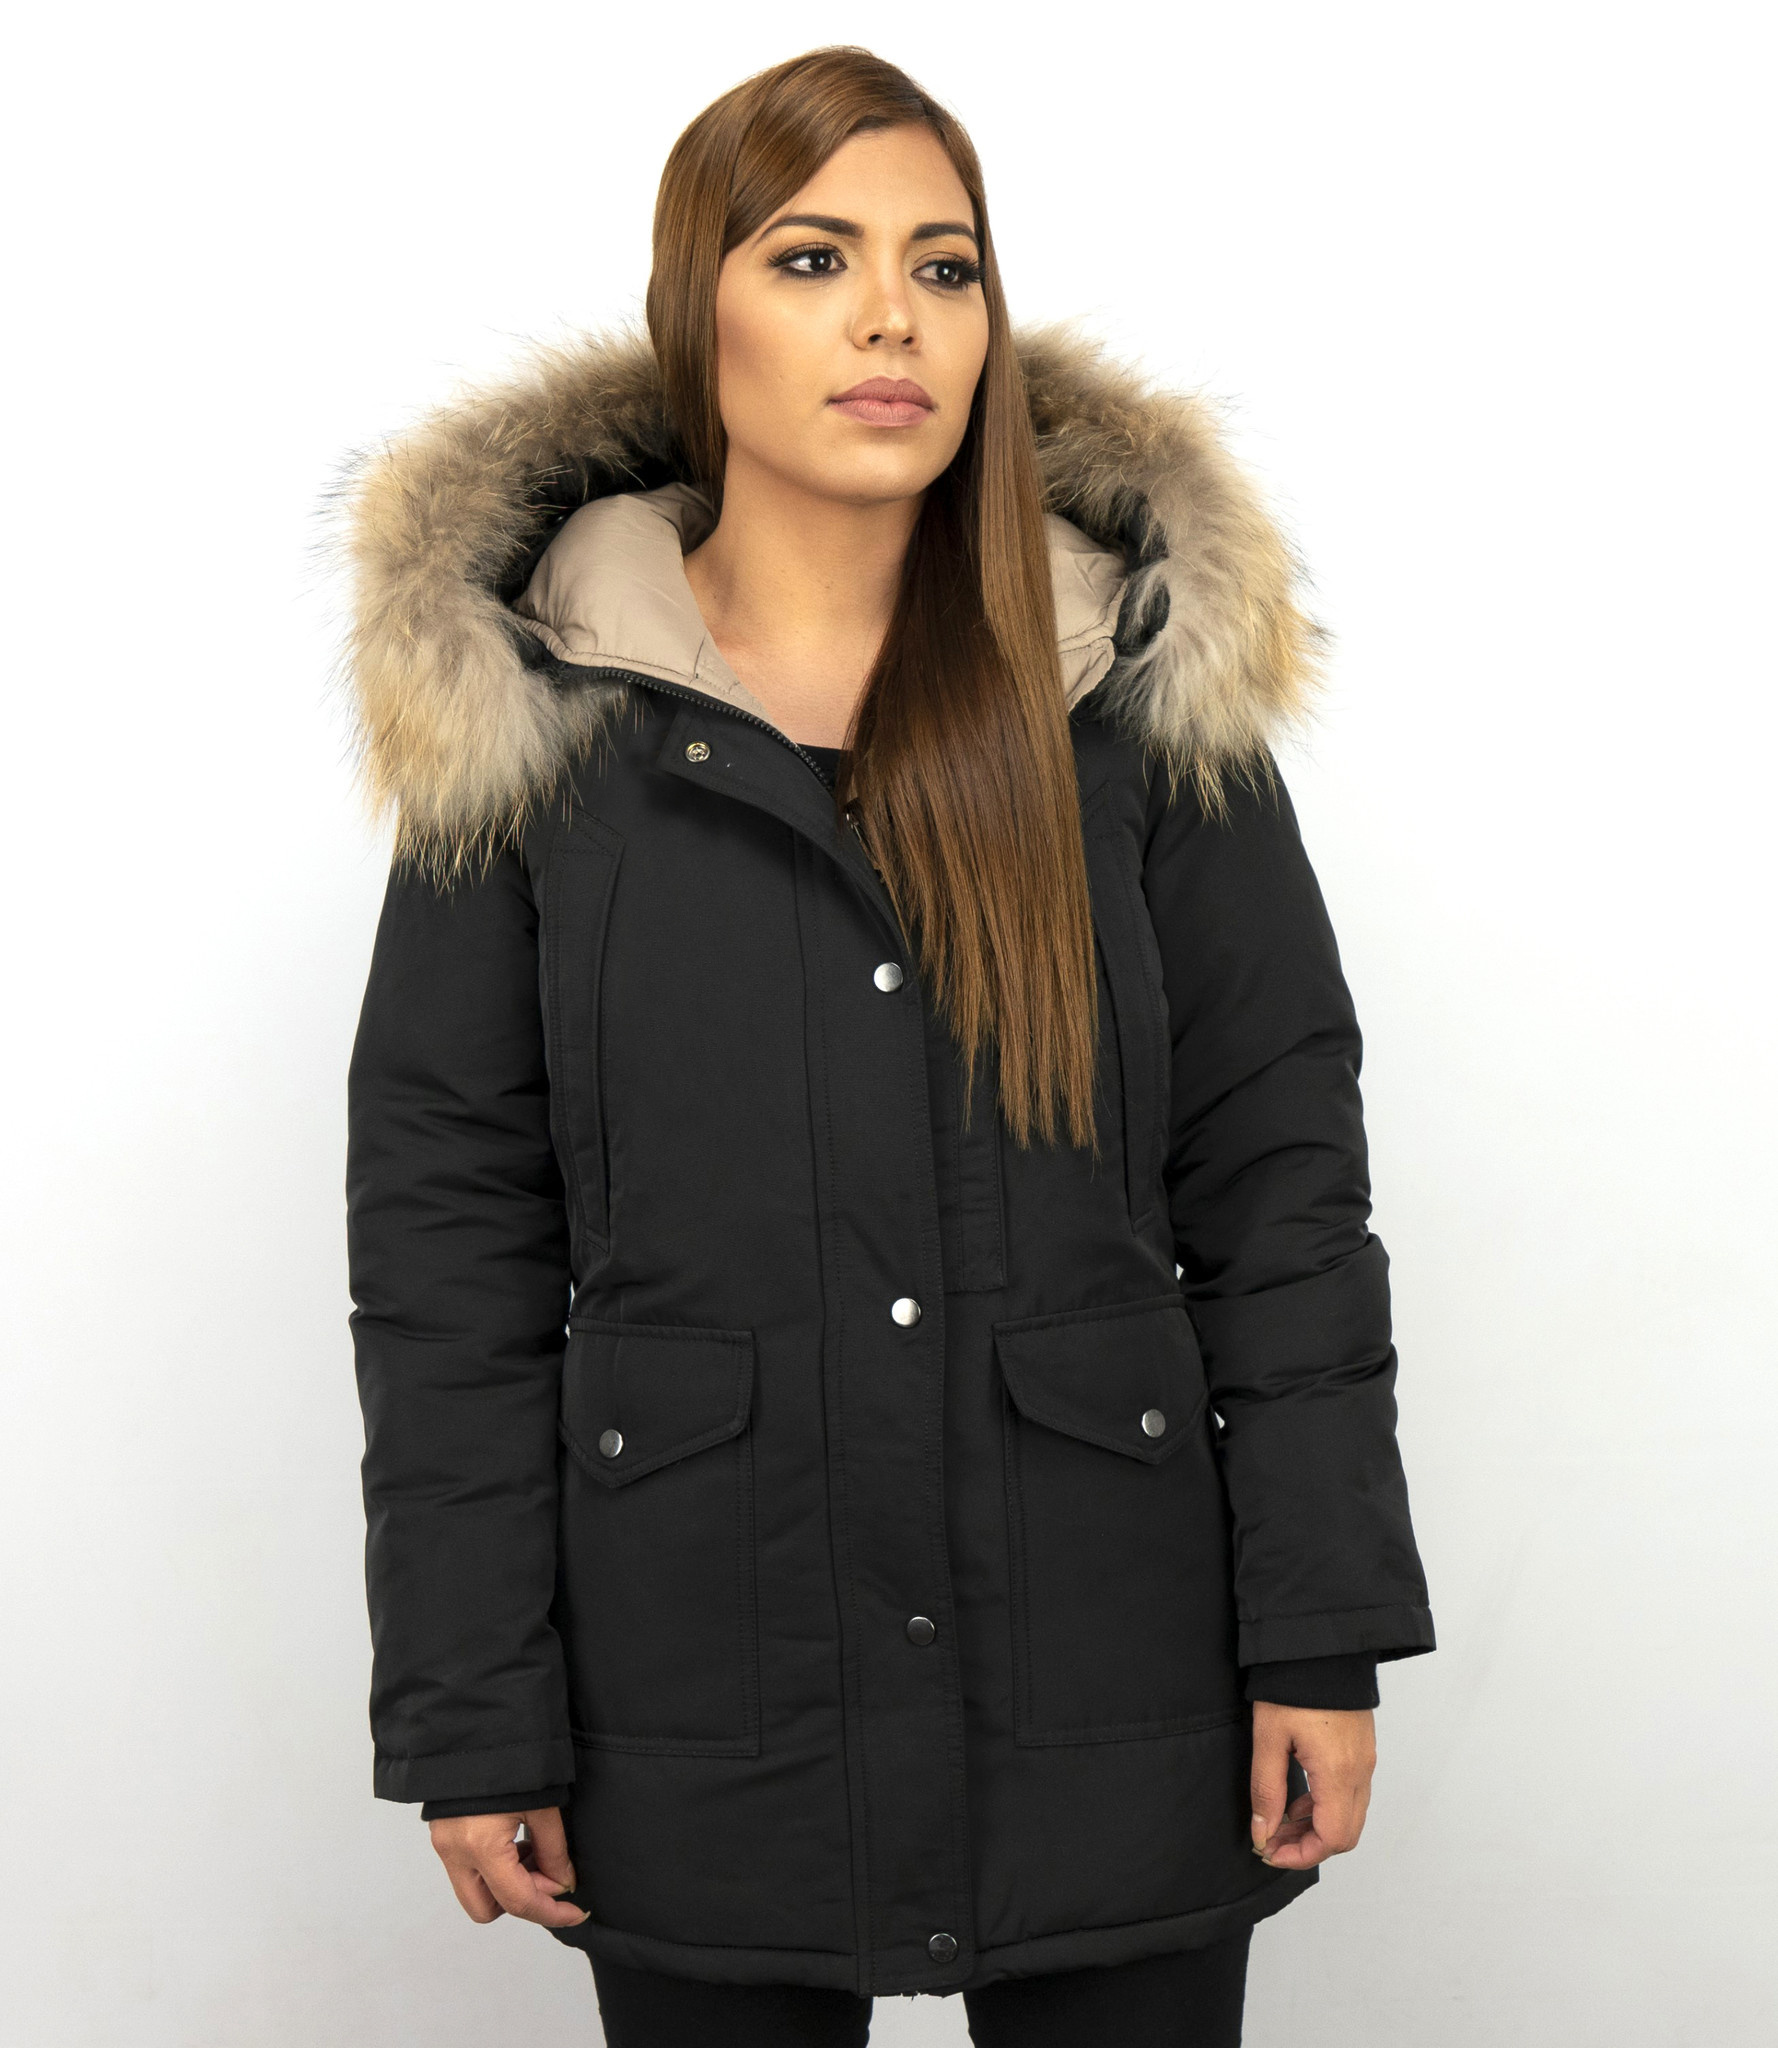 Smil Forløber storm Macleria Fur Collar Coat - Women's Winter Coat Long - Parka - Black -  Styleitaly.eu